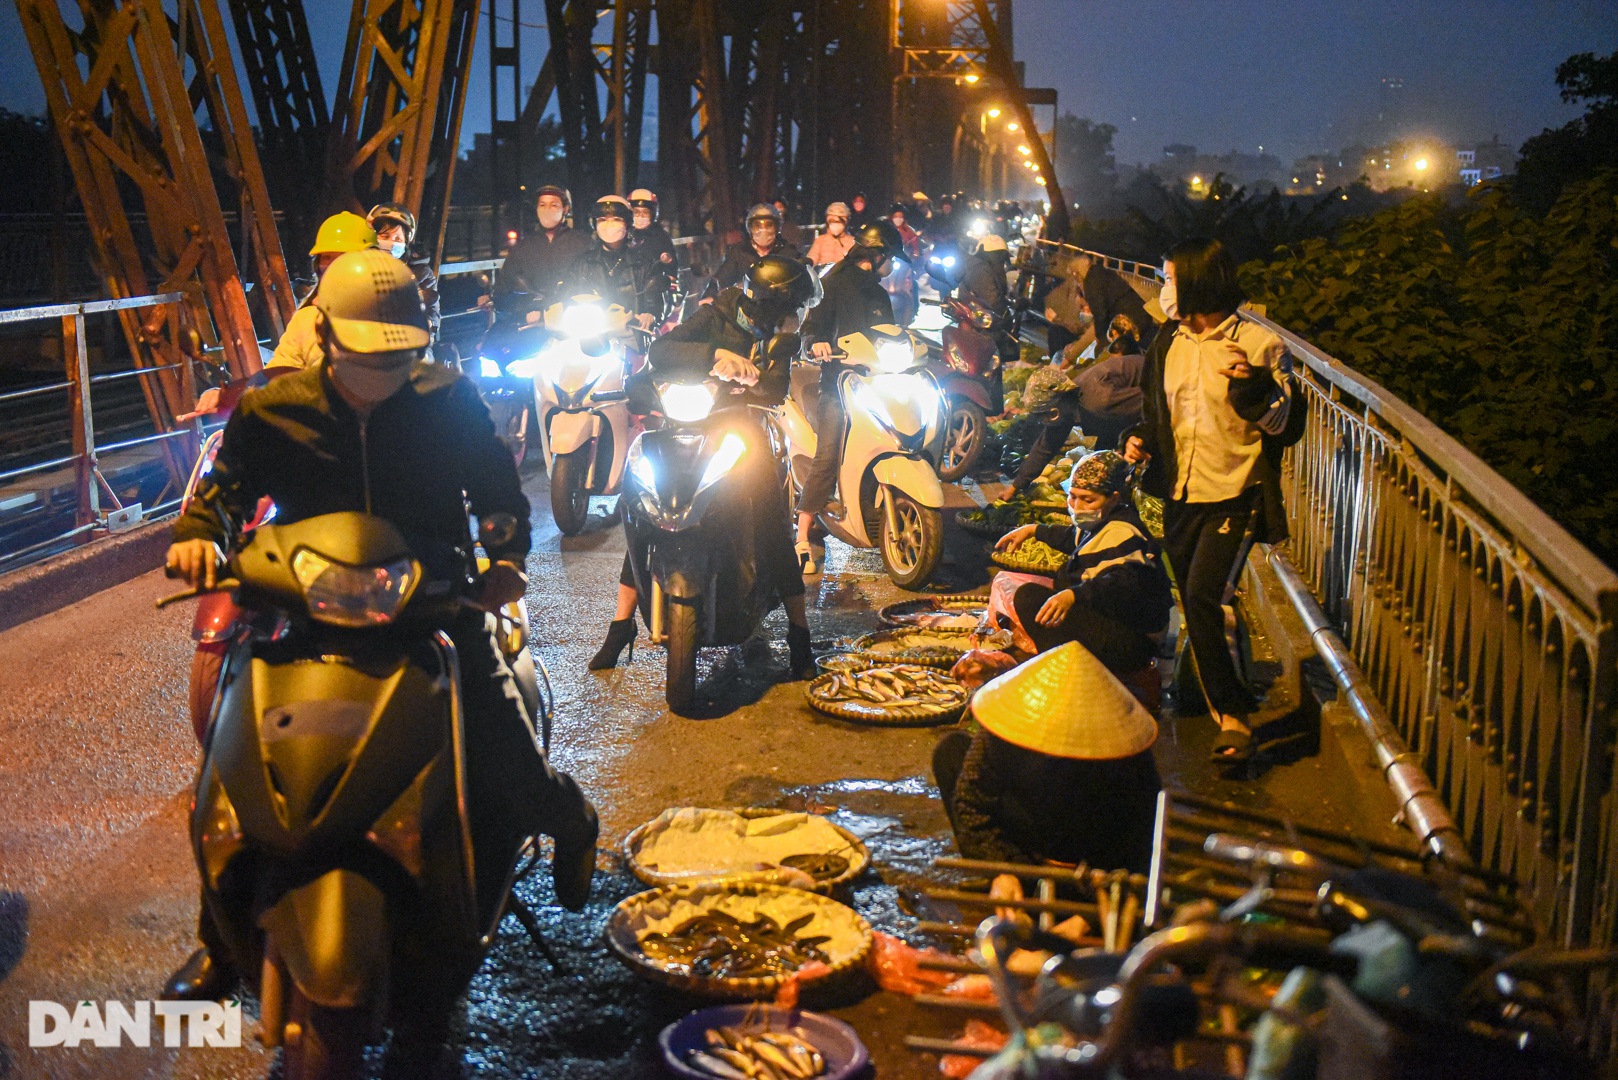 Cảnh họp chợ lộn xộn, giao thông ùn ứ trên cây cầu trăm tuổi ở Hà Nội - 9